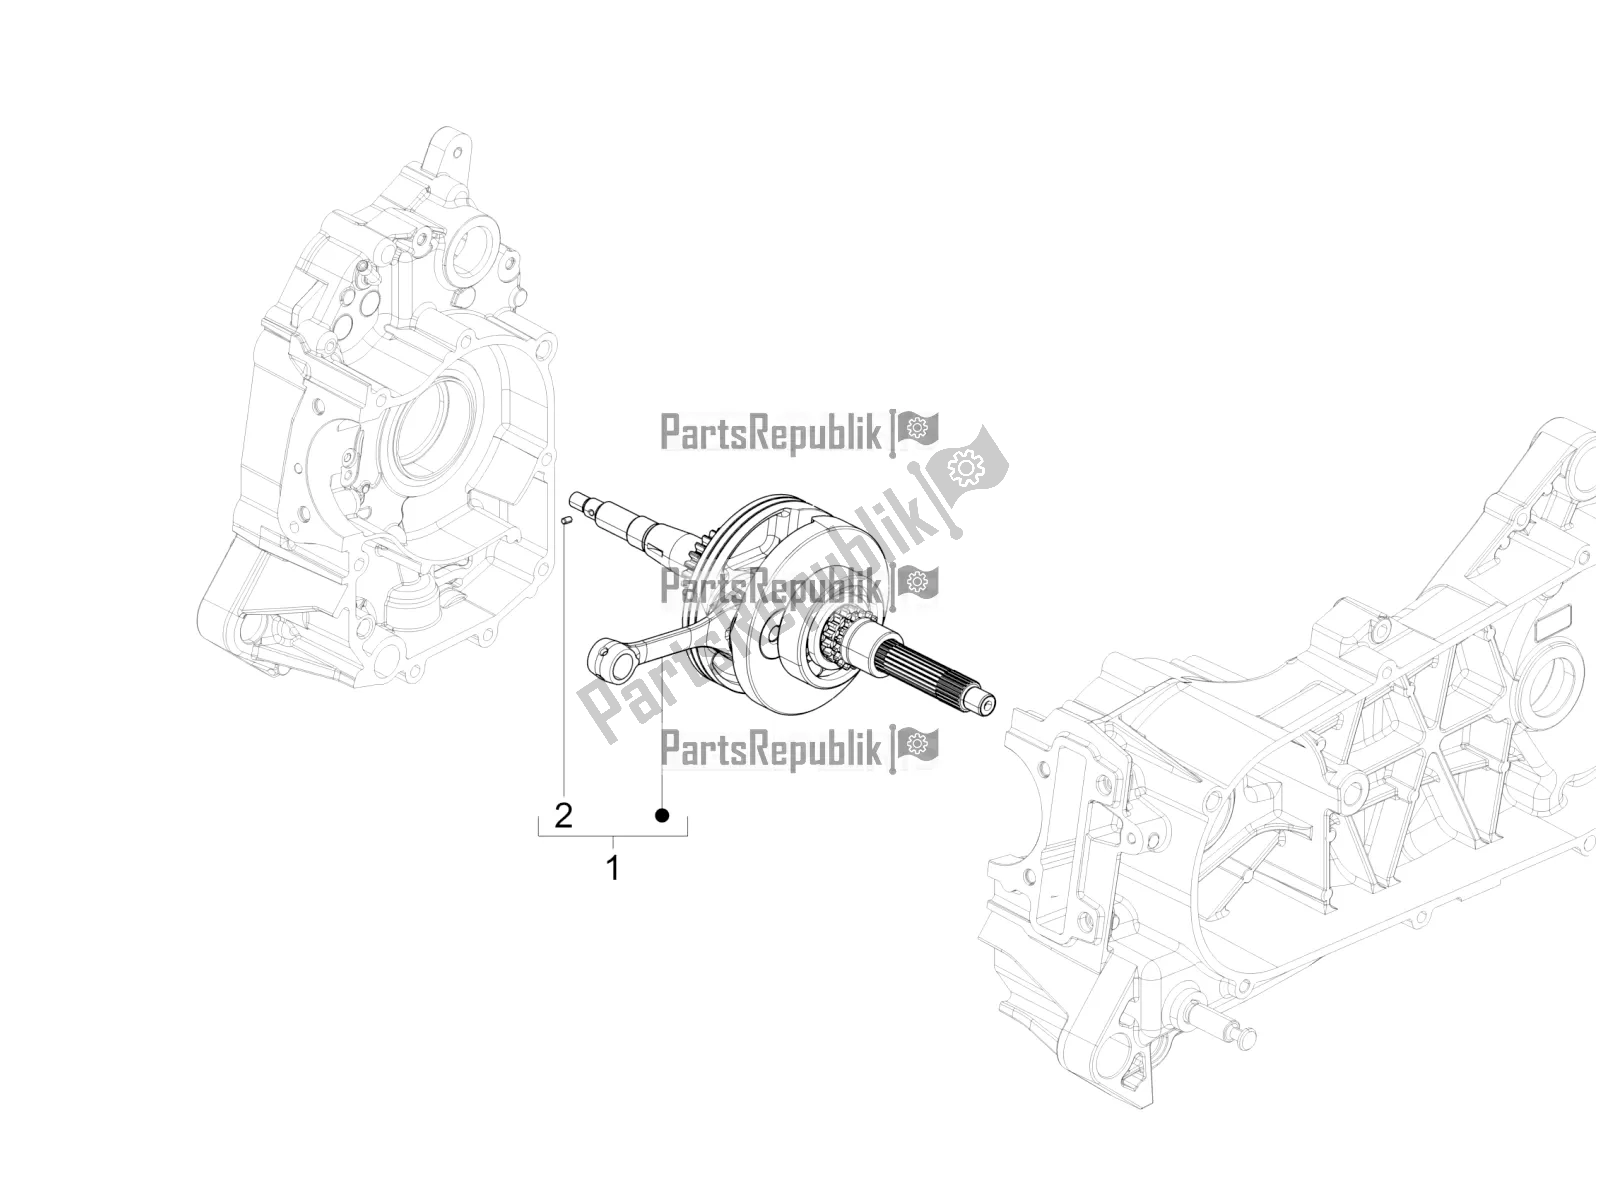 All parts for the Crankshaft of the Vespa SXL 125 4T 3V Apac 2020